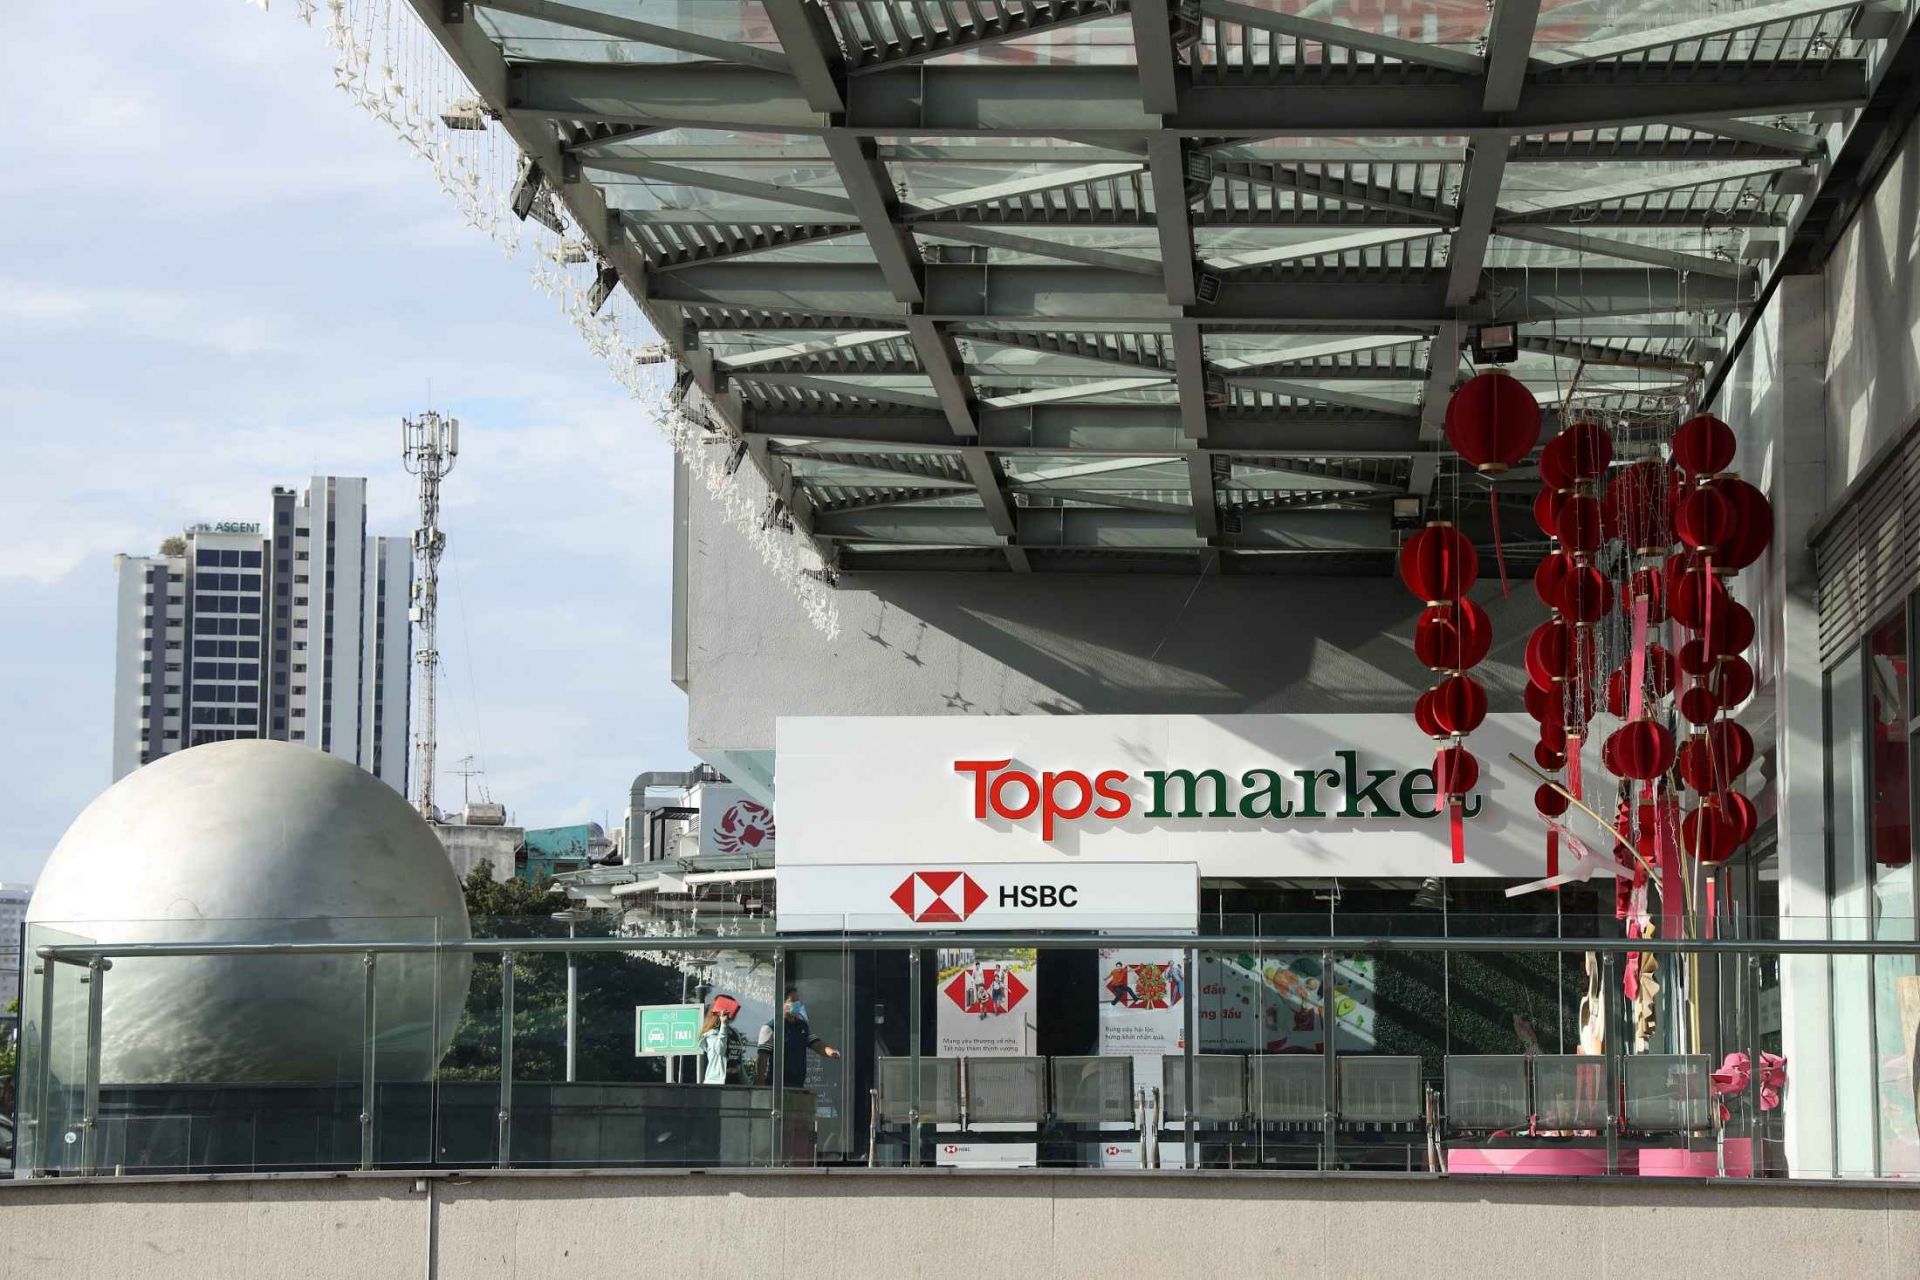 Central Retail mới đây cũng vừa ra mắt cái tên mới là Tops Market, chuyển đổi từ 7 siêu thị Big C sang